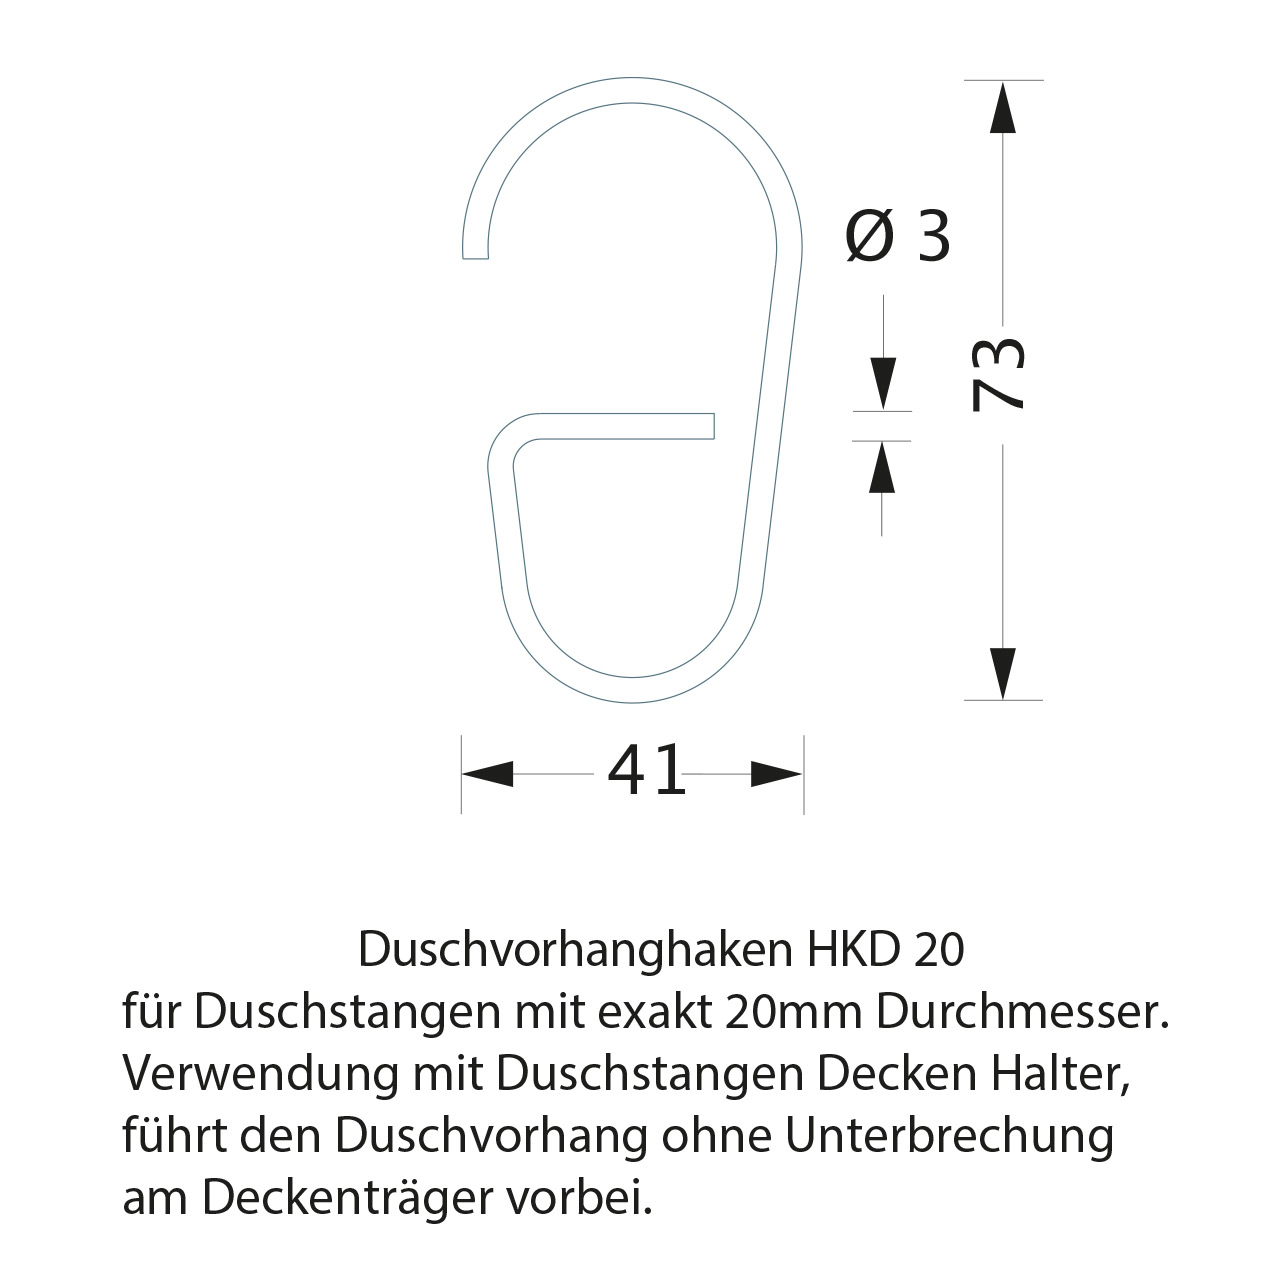 Duschvorhangstange Duschnische - 20 mm Edelstahl | Duschvorhang.de, einfach  gute Duschvorhänge